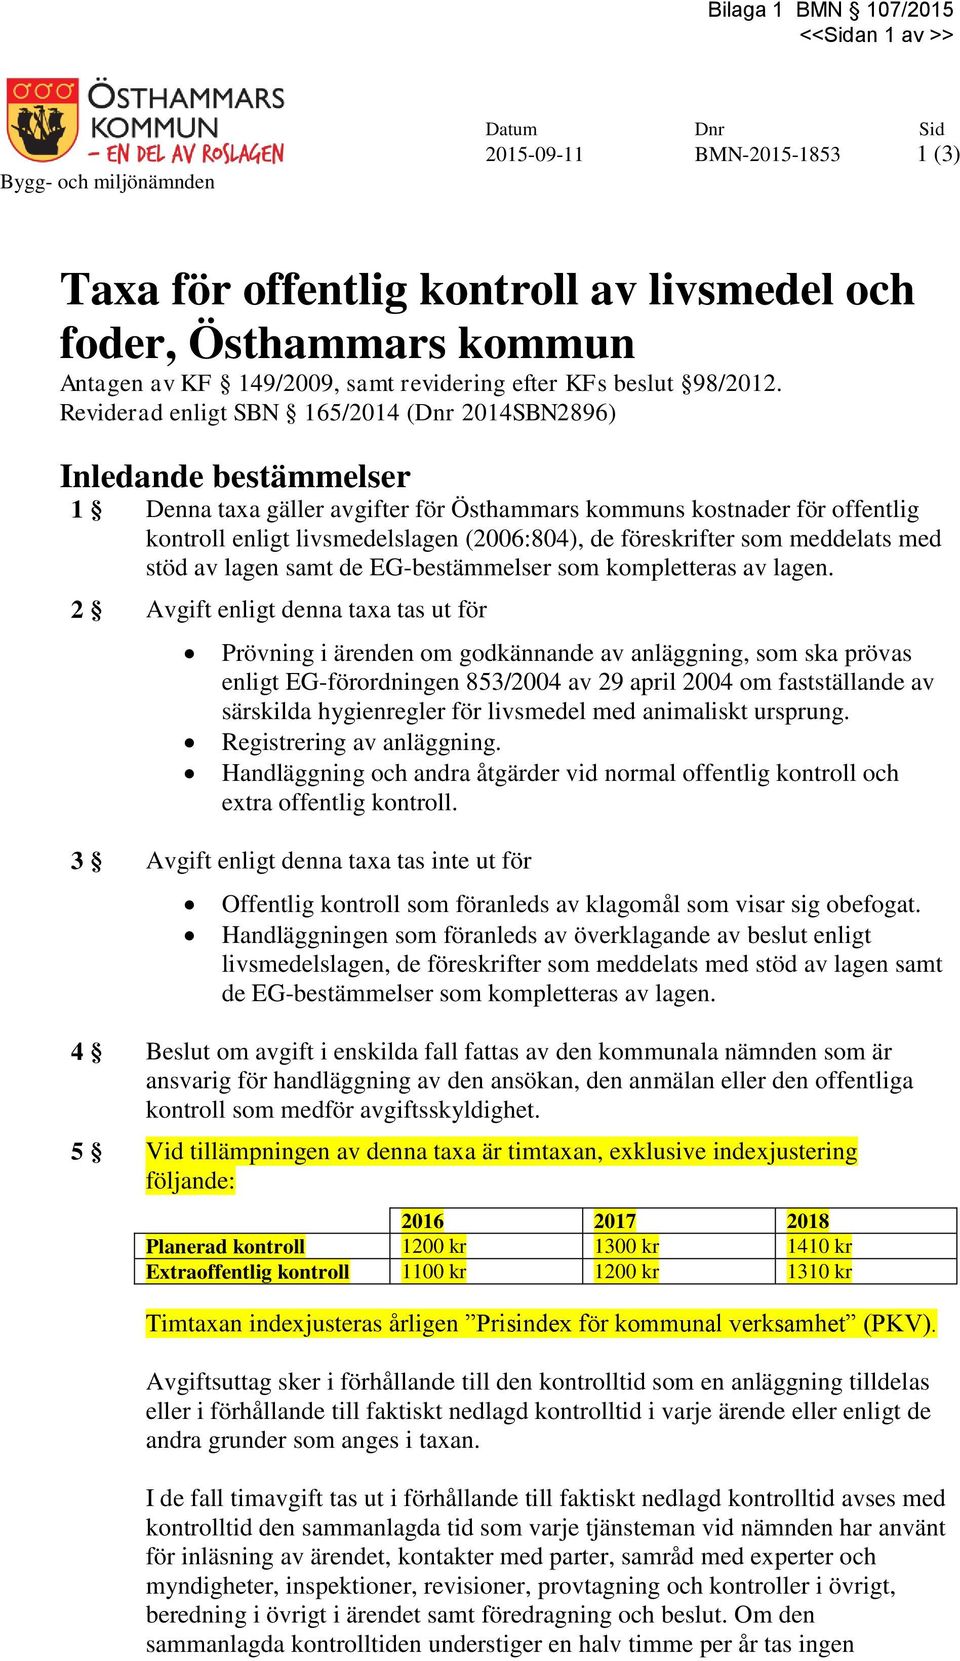 Reviderad enligt SBN 165/2014 (Dnr 2014SBN2896) Inledande bestämmelser 1 Denna taxa gäller avgifter för Östhammars kommuns kostnader för offentlig kontroll enligt livsmedelslagen (2006:804), de